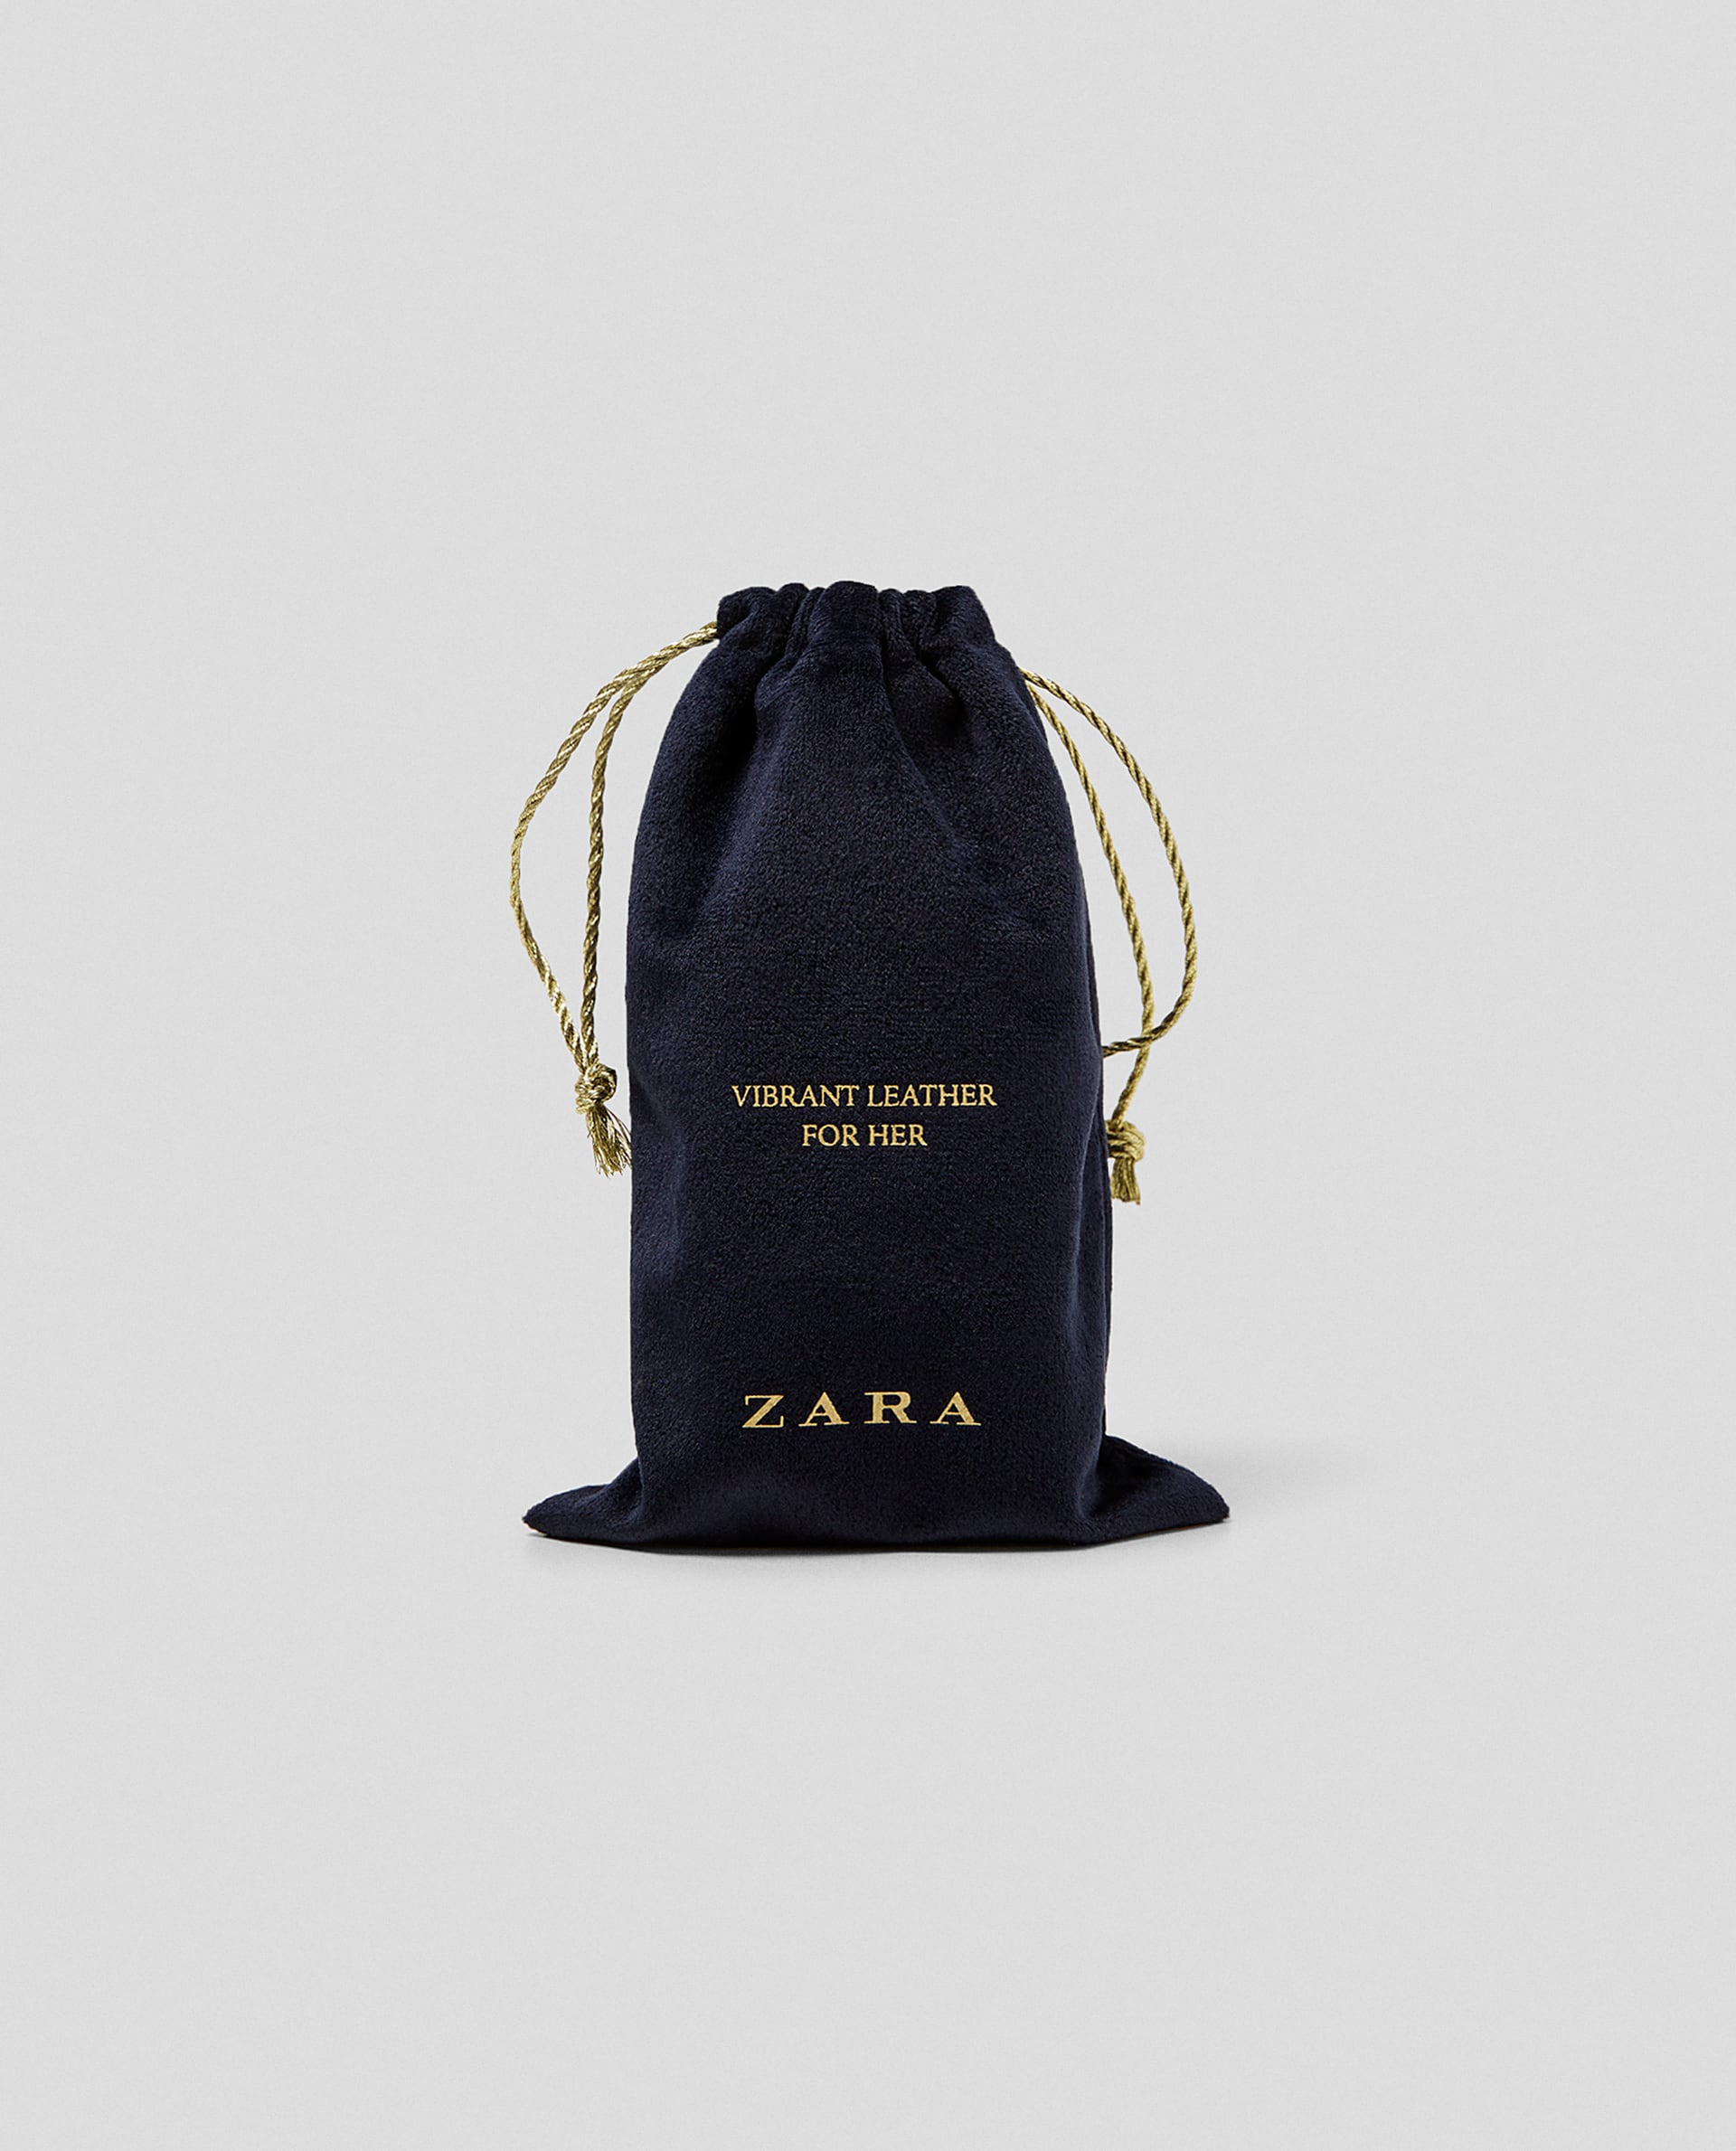 Vibrant Leather for Her Zara parfum - un parfum pour femme 2017